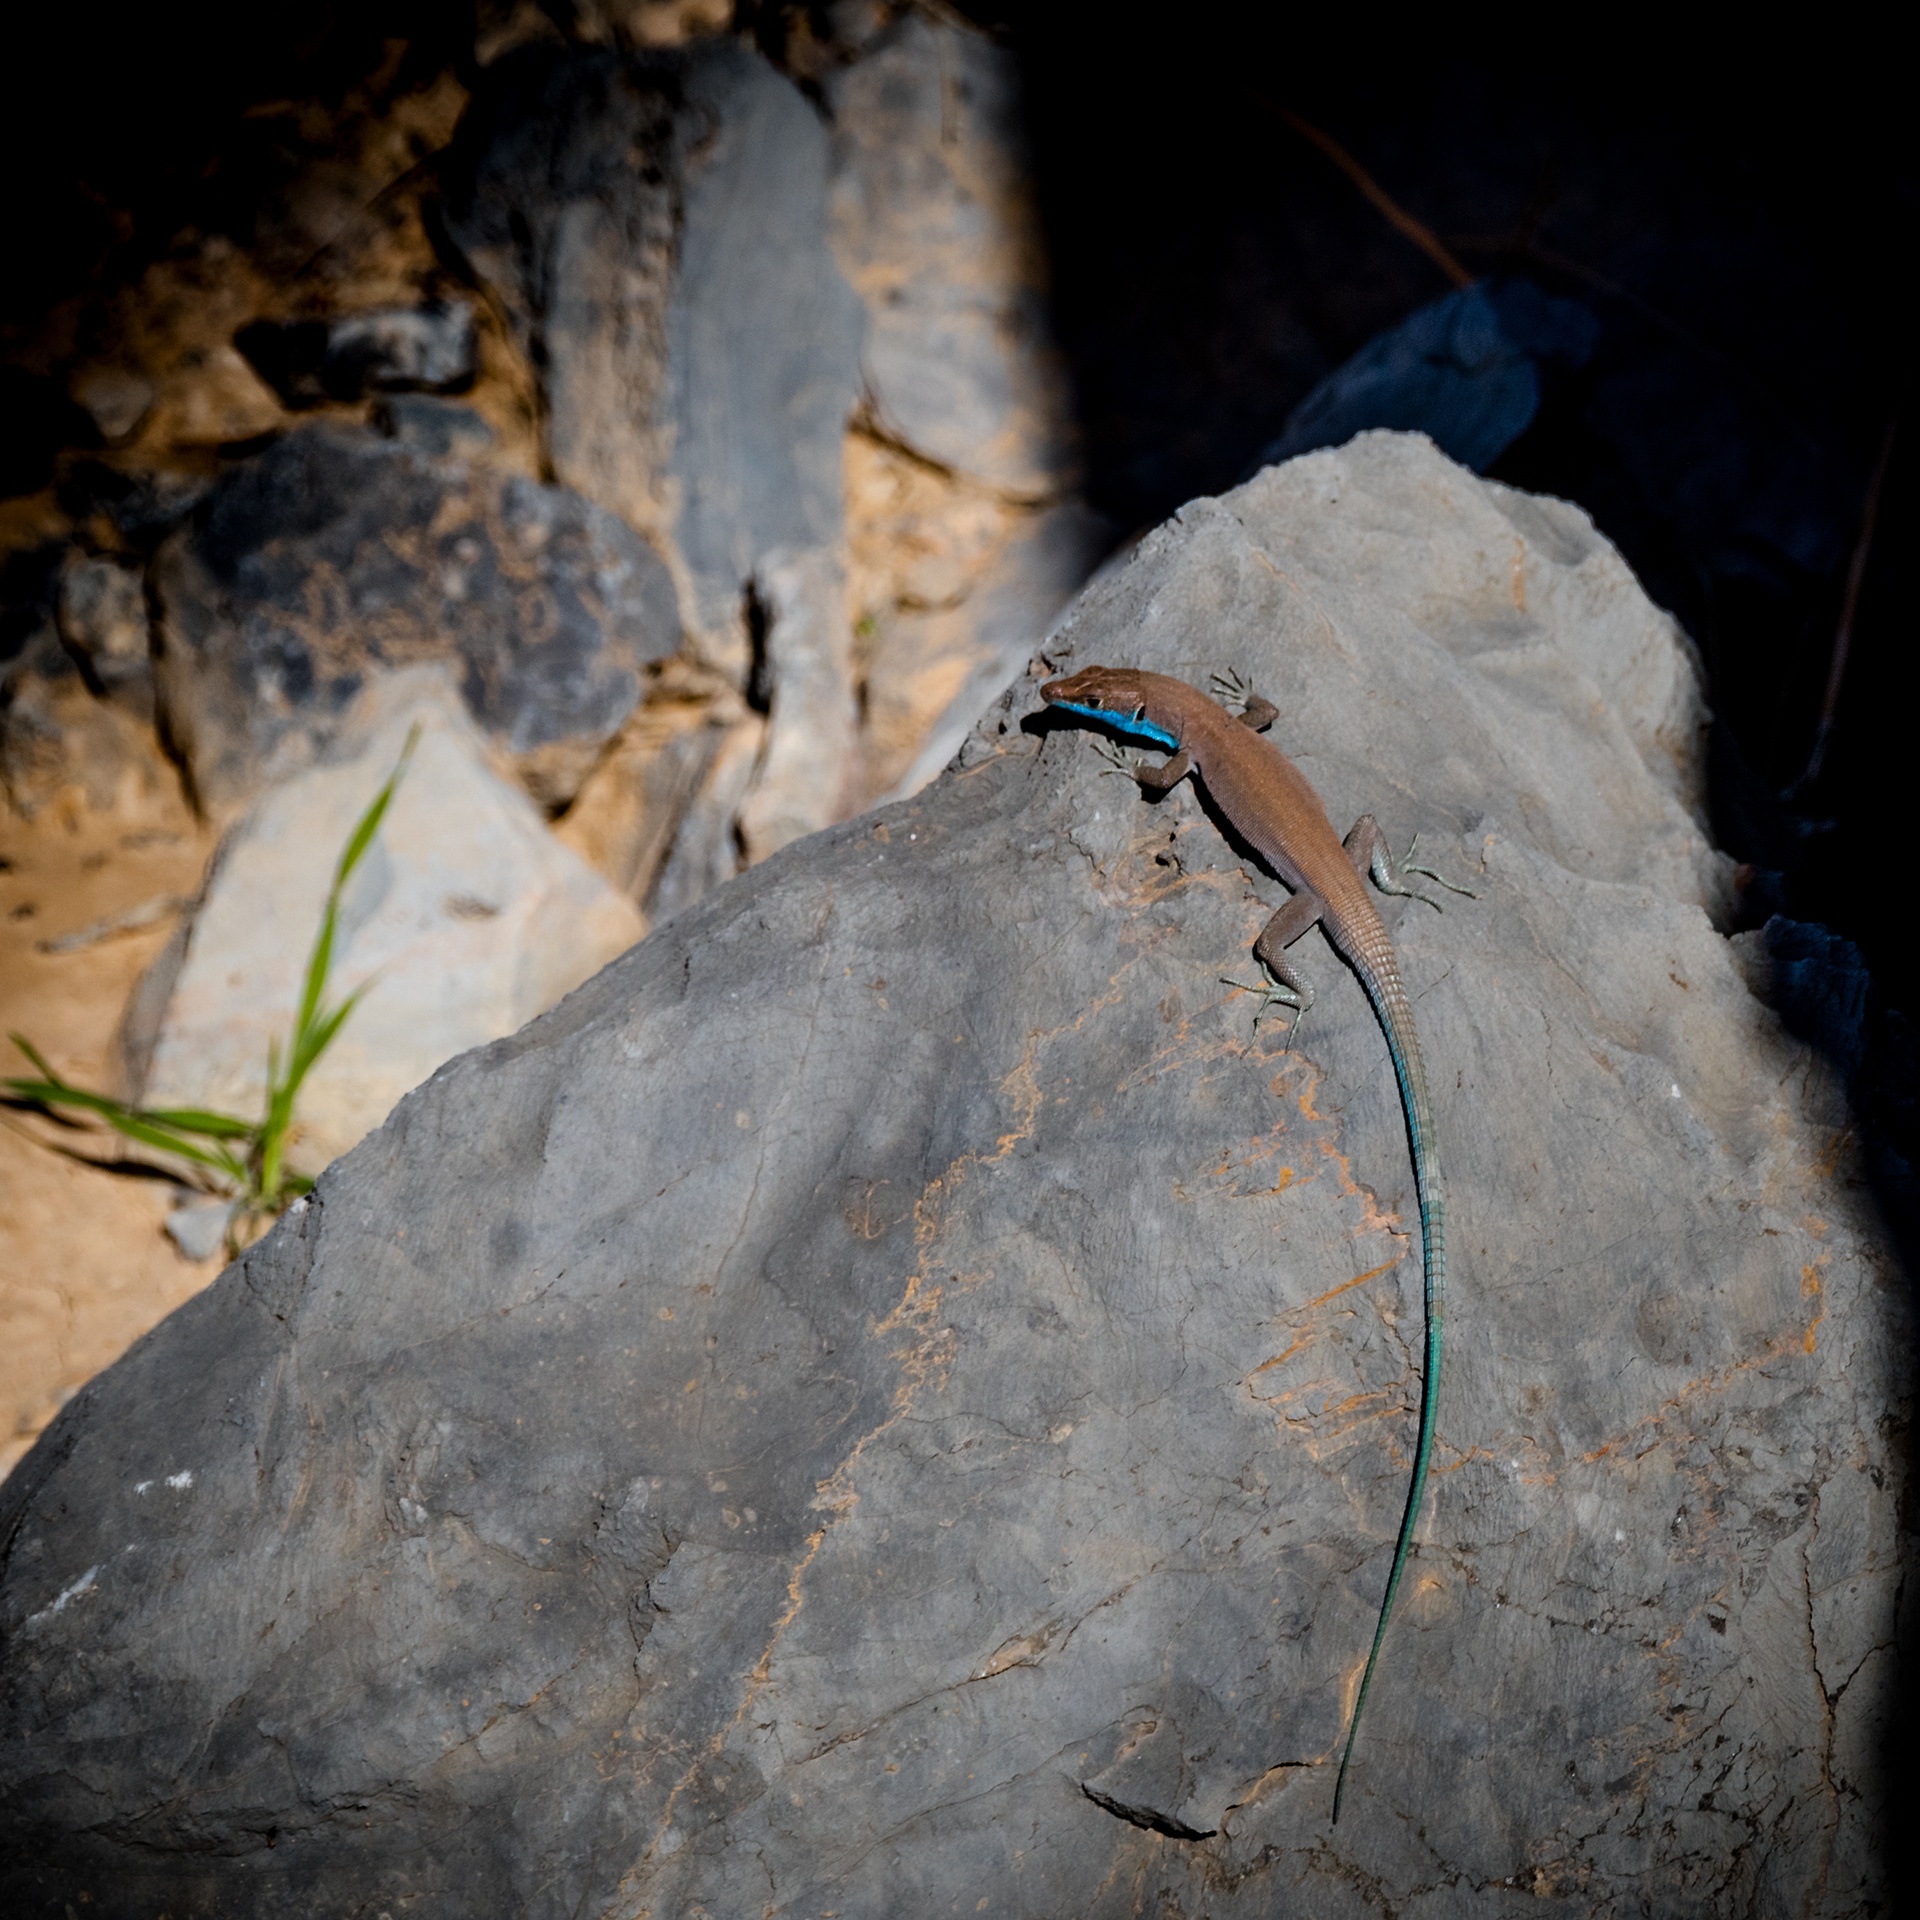 Omanosaura cyanura or Blue Tailed Lizard 01